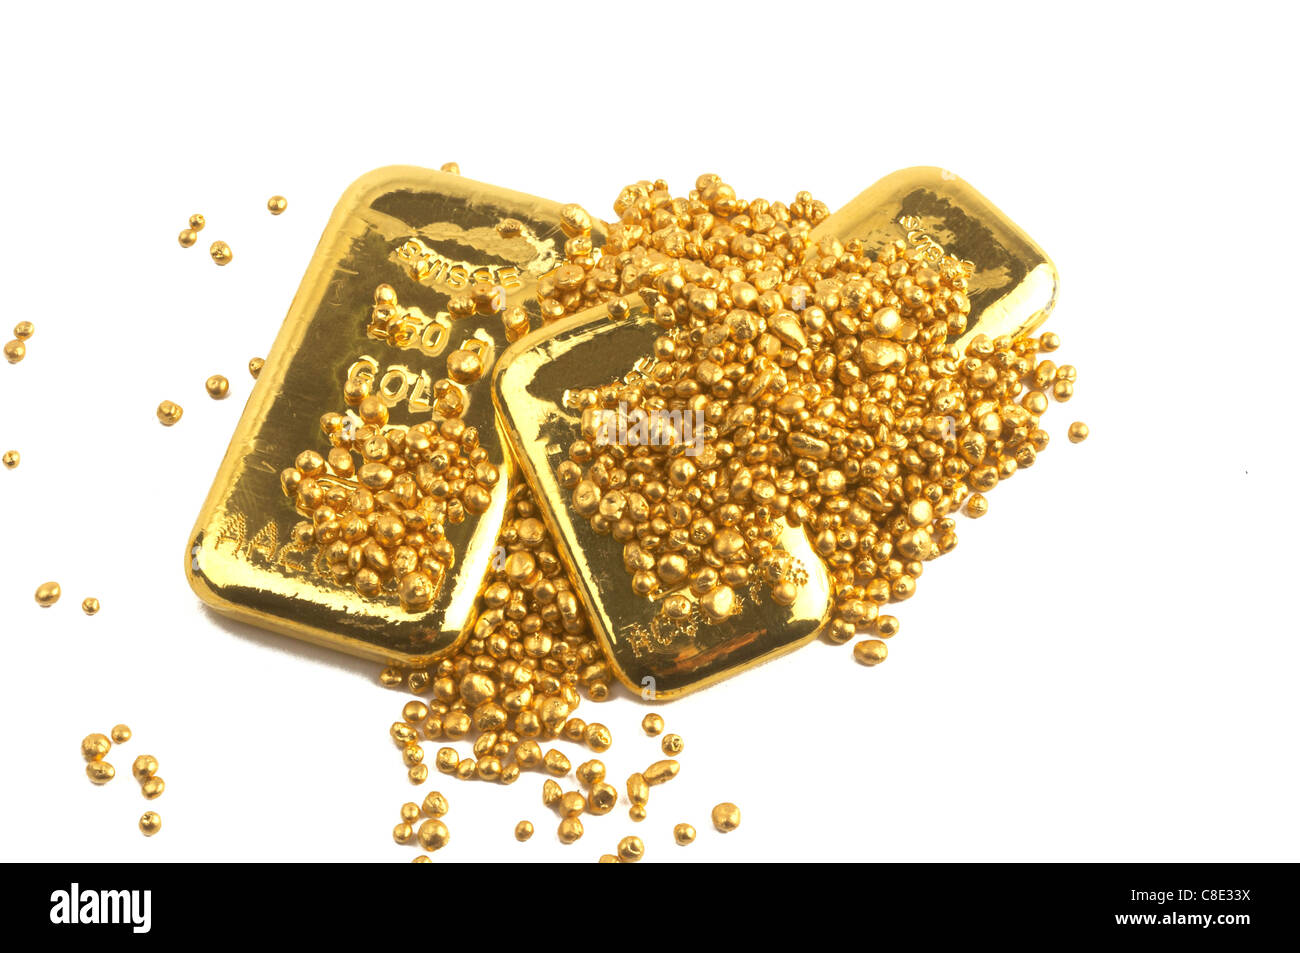 Bank banking Bars Buillon Geschäft Pflege Währung Wirtschaft Börse Finanzen finanzielle Vermögen gold Goldbarren golden Gier schwere iso Stockfoto